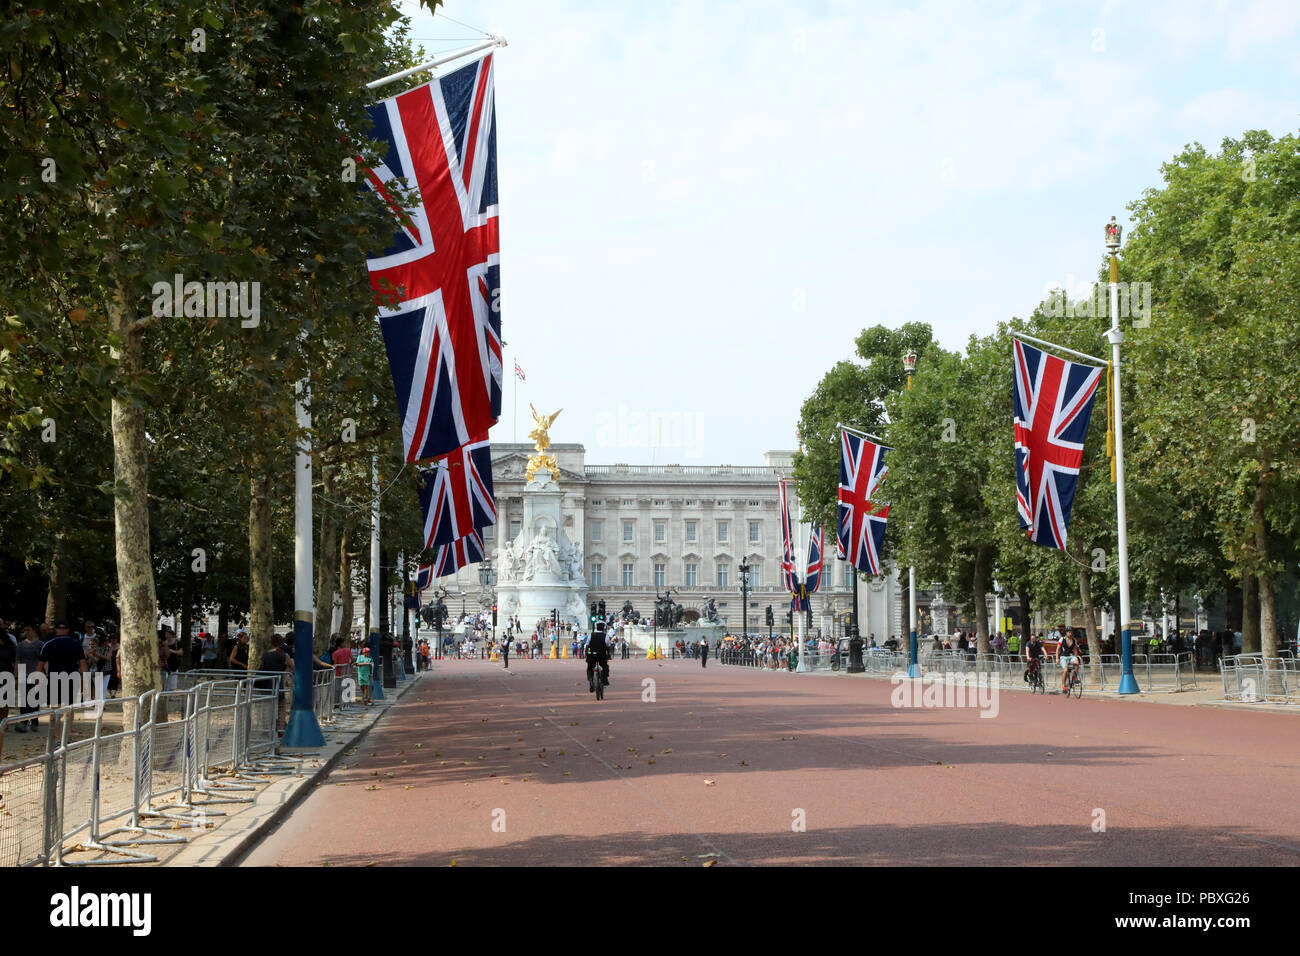 Londres/UK - 26 de julio 2018: Vista del Palacio de Buckingham, la casa del monarca británico, a lo largo del Mall Foto de stock